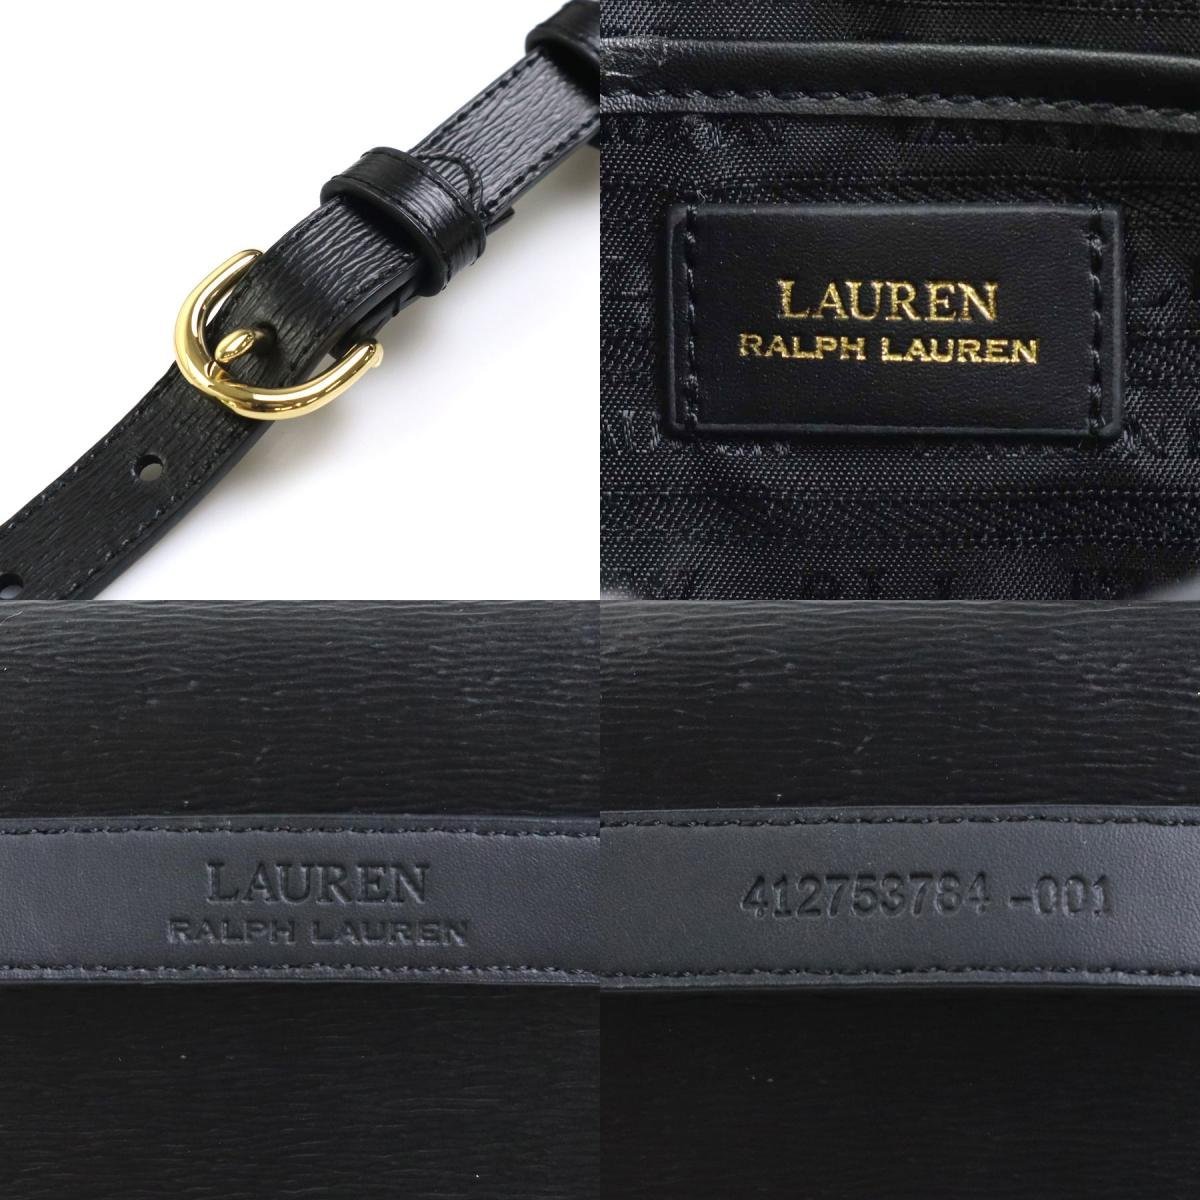 LAUREN RALPH LAUREN low Len Ralph Lauren waist bag belt bag leather black r9529f